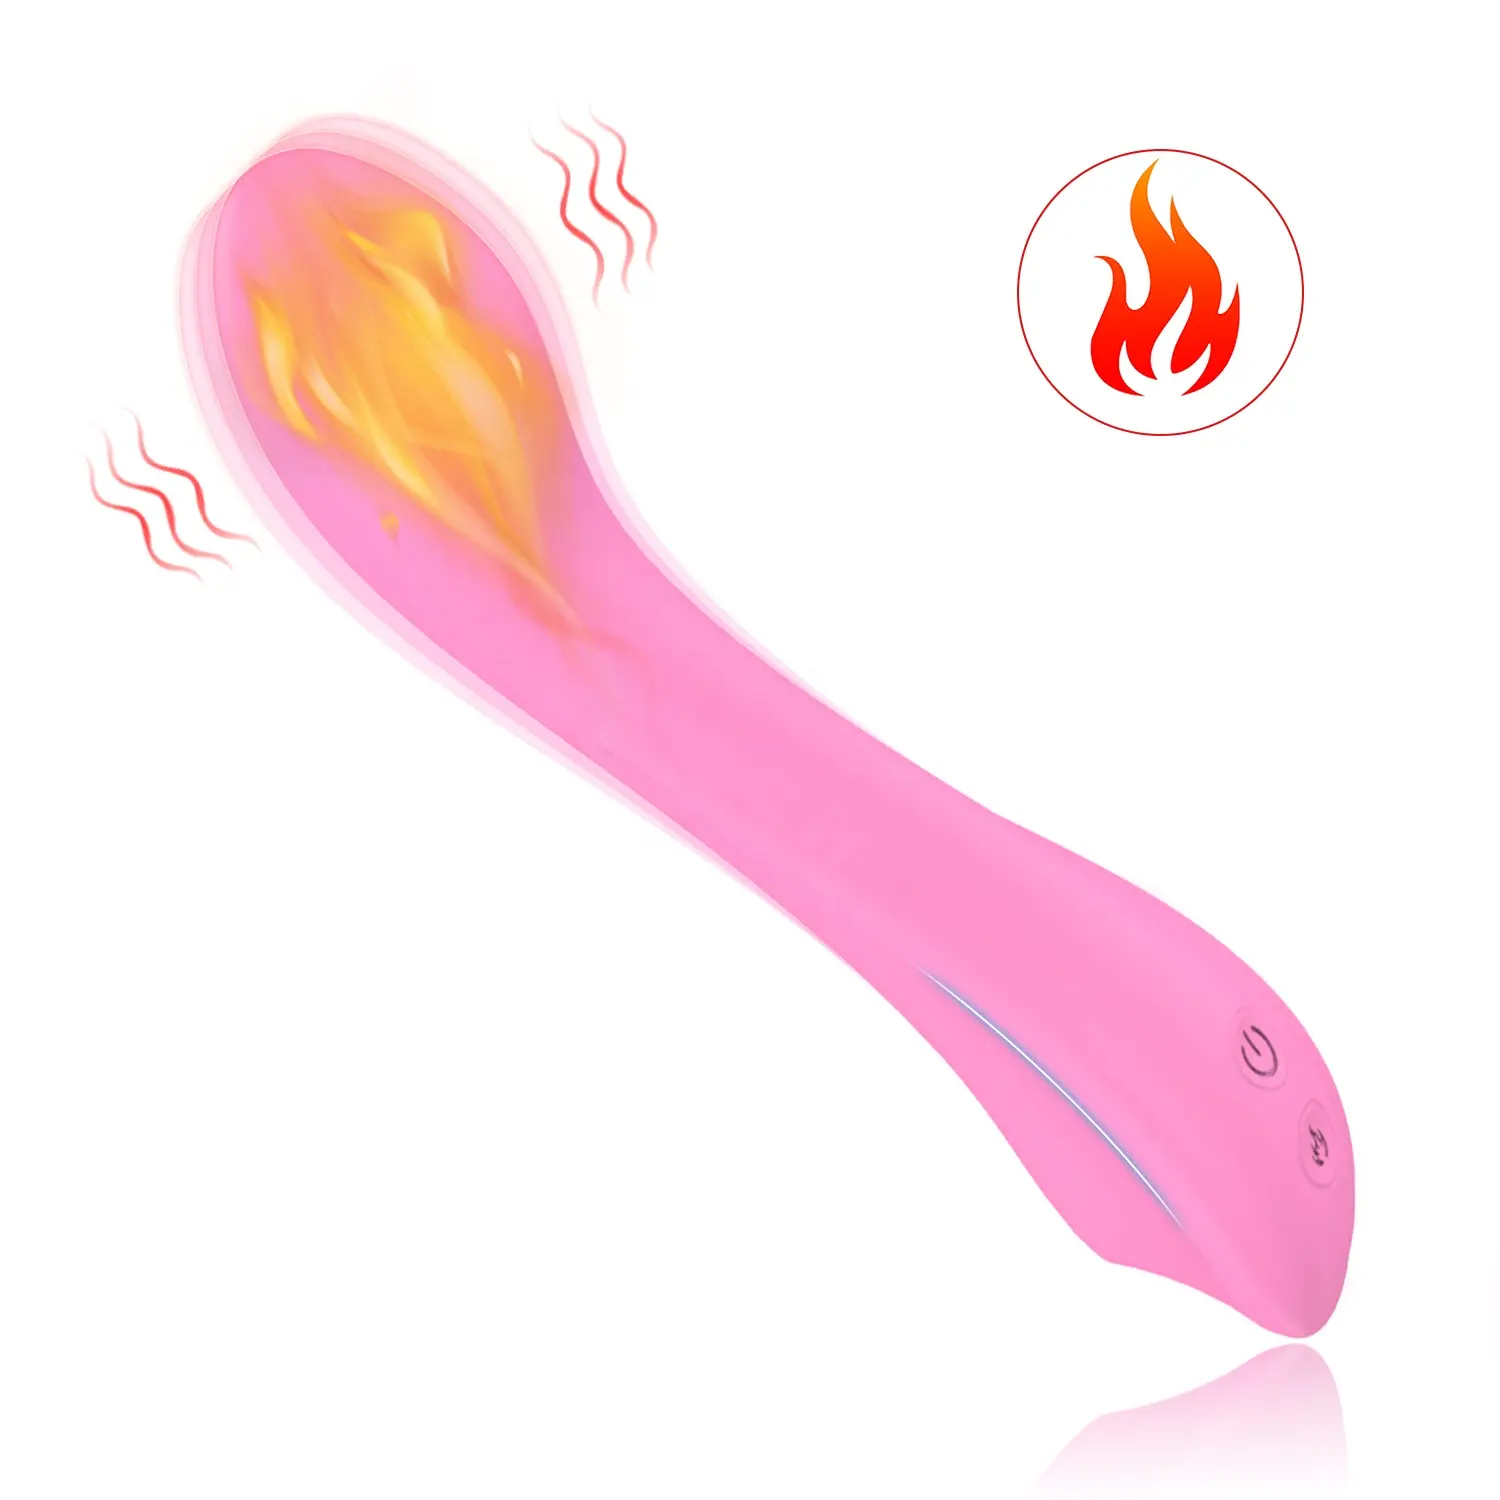 YLove yumuşak sıvı g-spot stimülatör vücut masajı kadın yapay penis isıtma fonksiyonu seks oyuncakları kadın oyuncakları vibratör kadınlar için